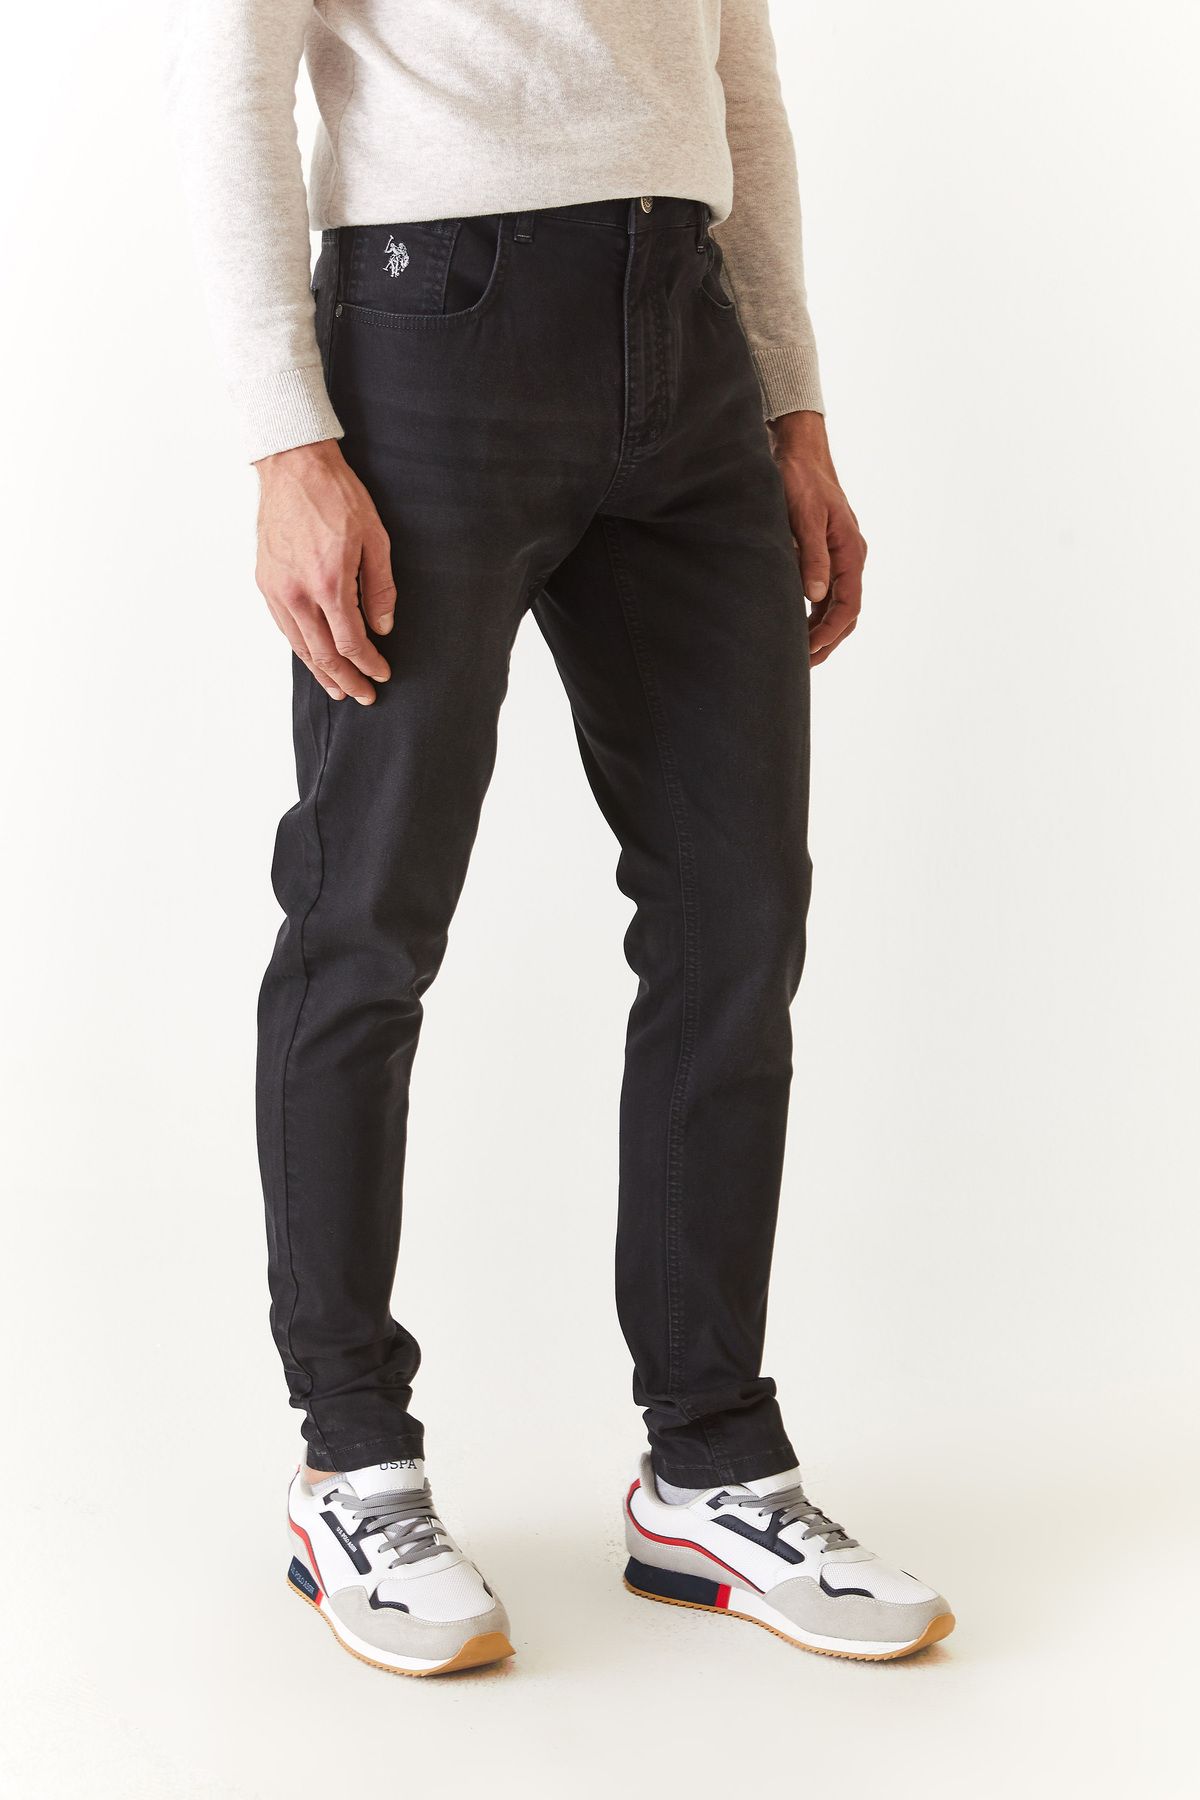 U.S. Polo Assn. Erkek NIGOS-U  Antrasit Jeans Pantolon 1688438